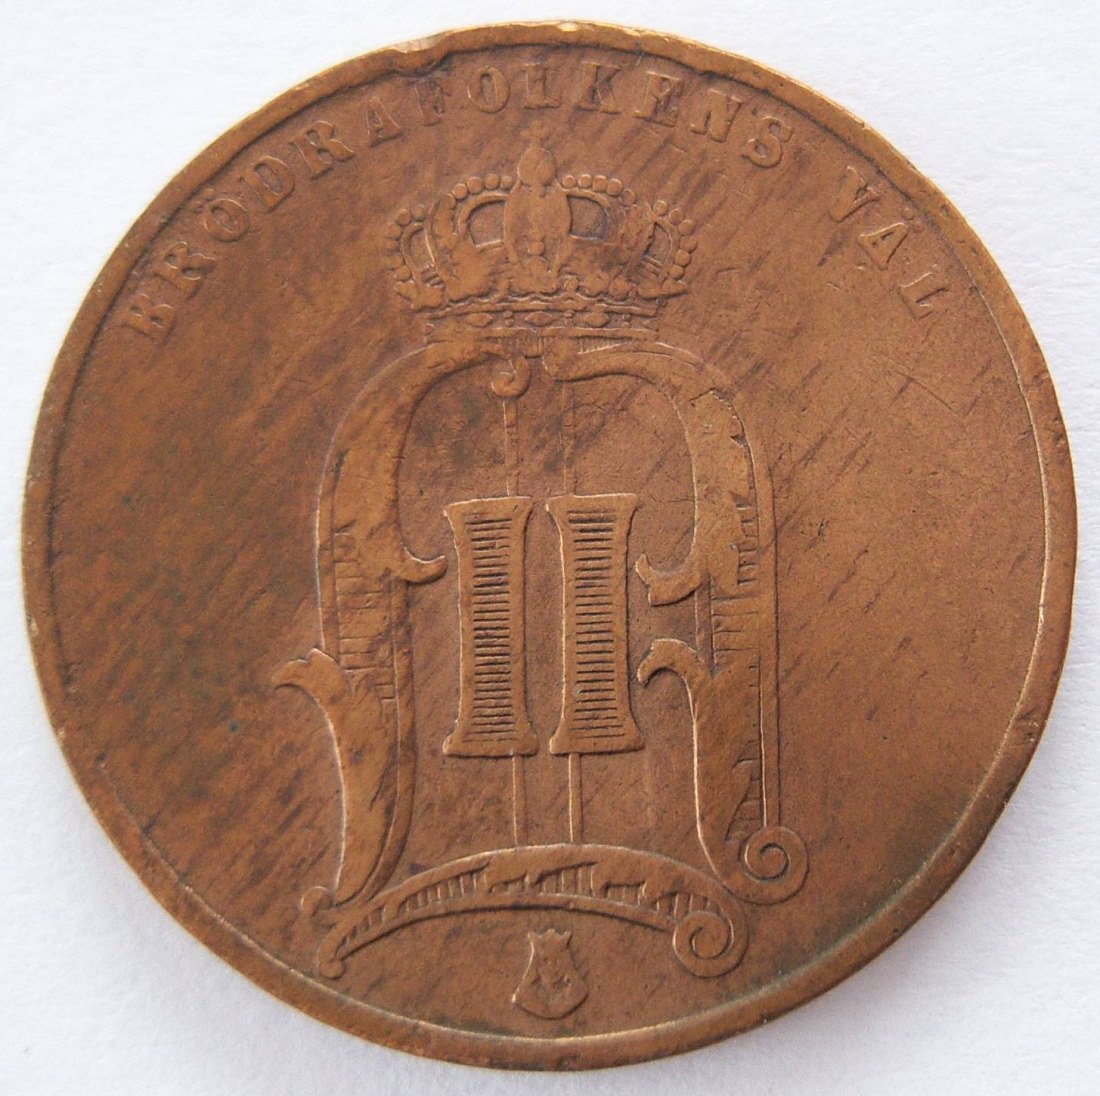  Schweden 5 Öre 1878 Bronze   